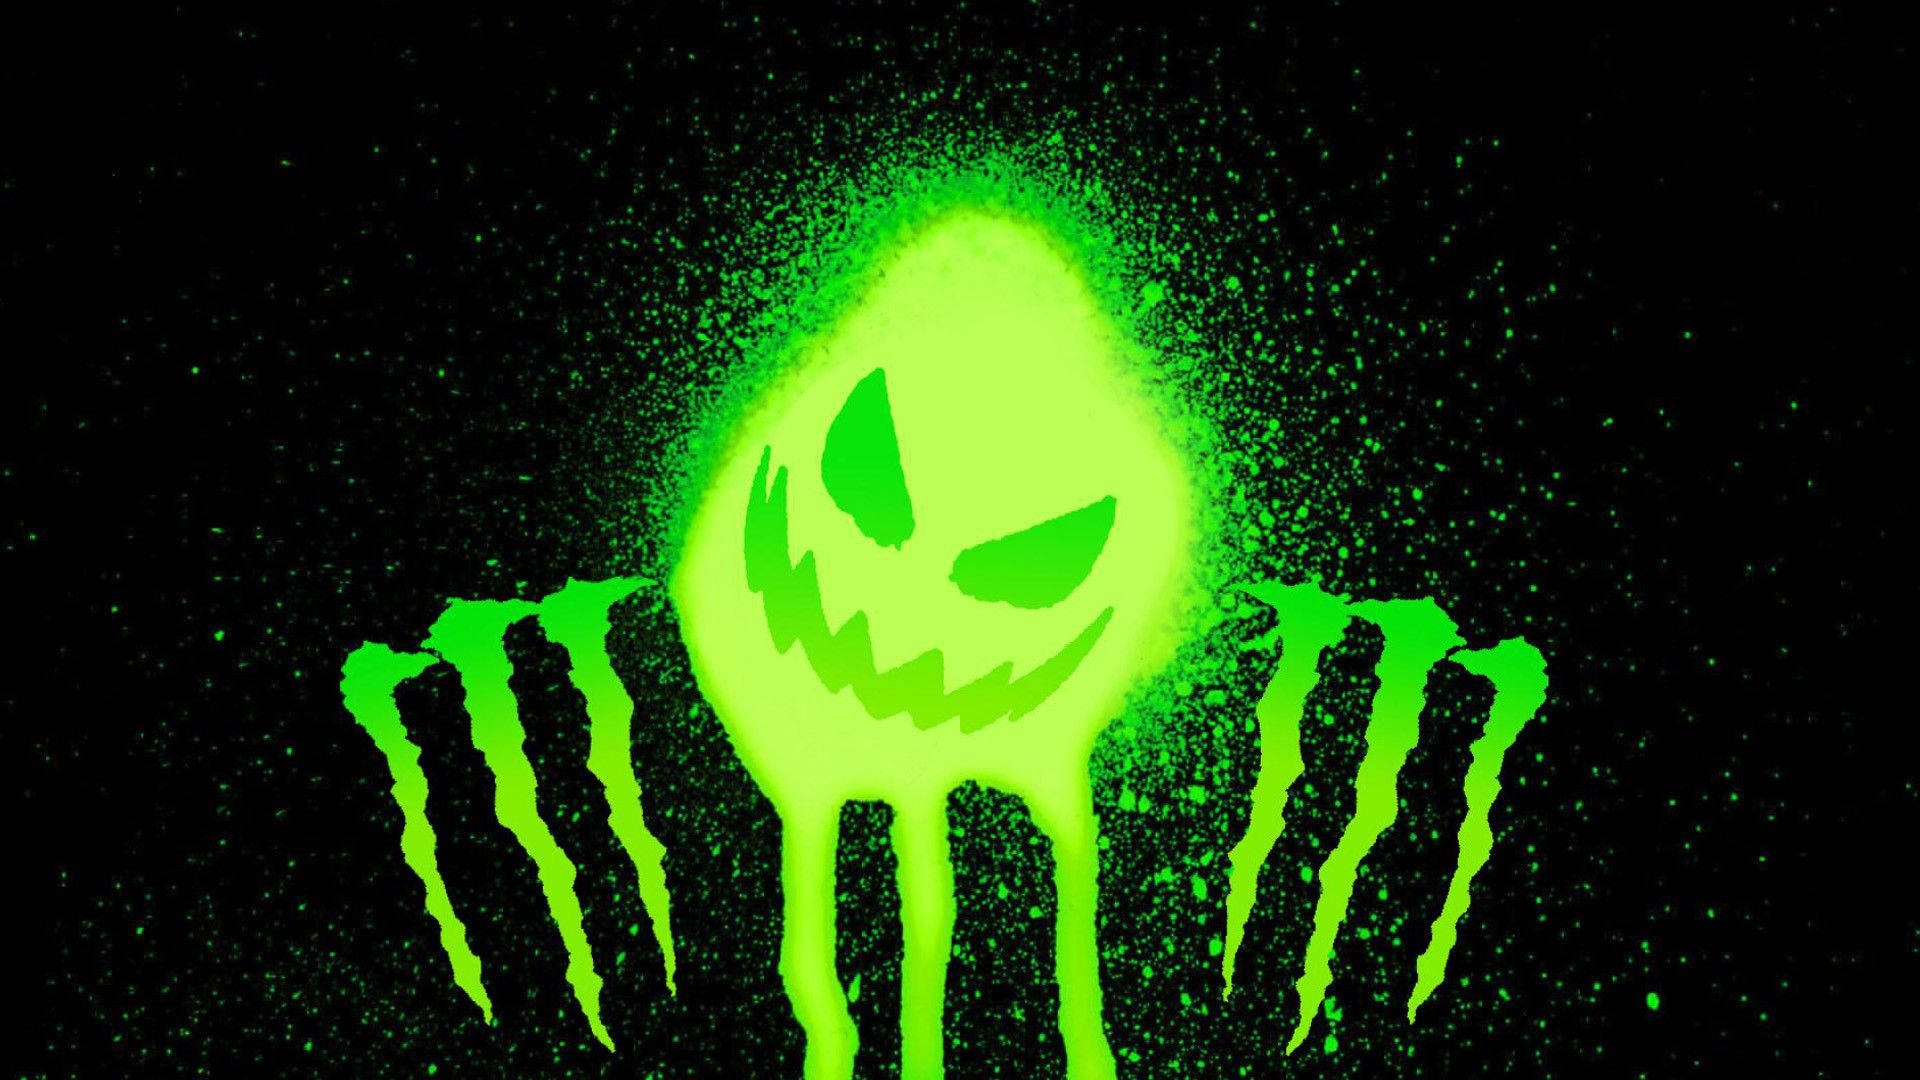 Caption: Vibrant Green Monster Logo Background